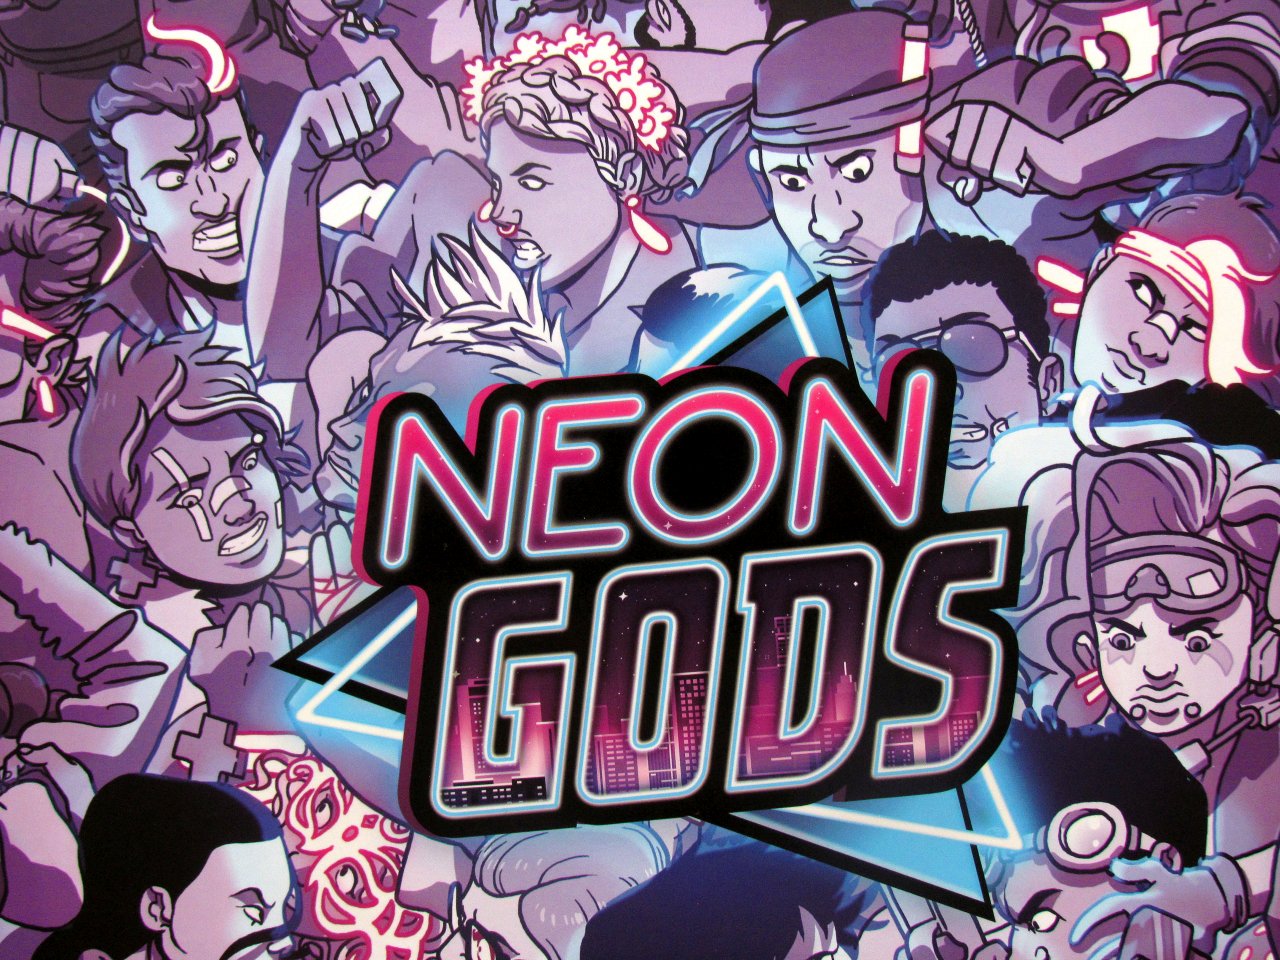 neon gods book 3